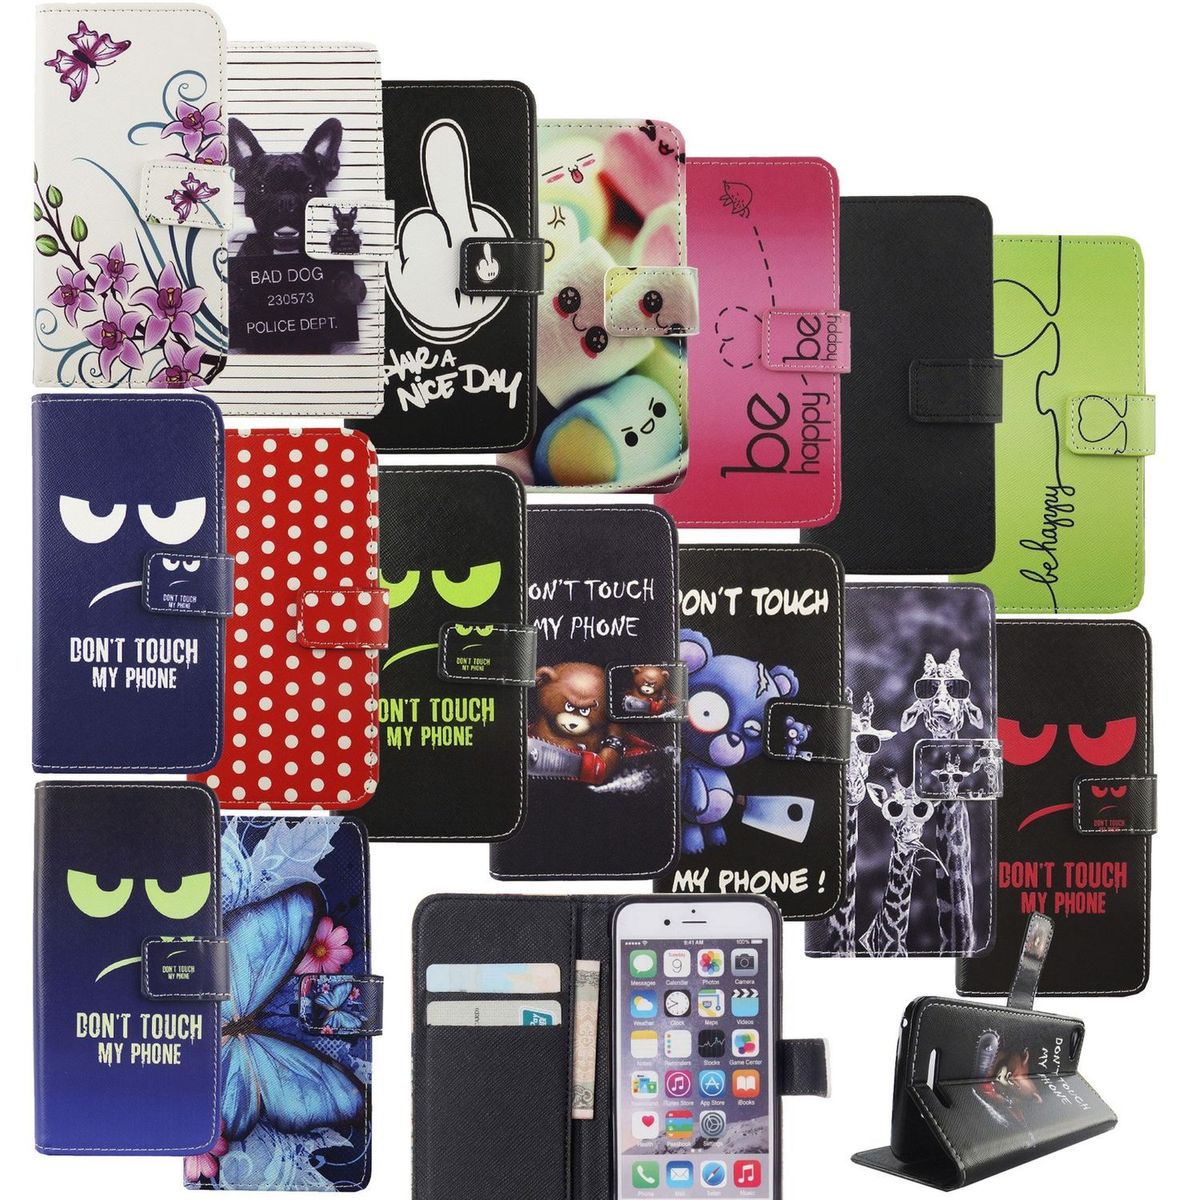 König Design Handyhülle für Samsung Galaxy S Serie Lederhülle mit Kartenfächer, Schutzhülle mit Standfunktion, Klapphülle Tasche